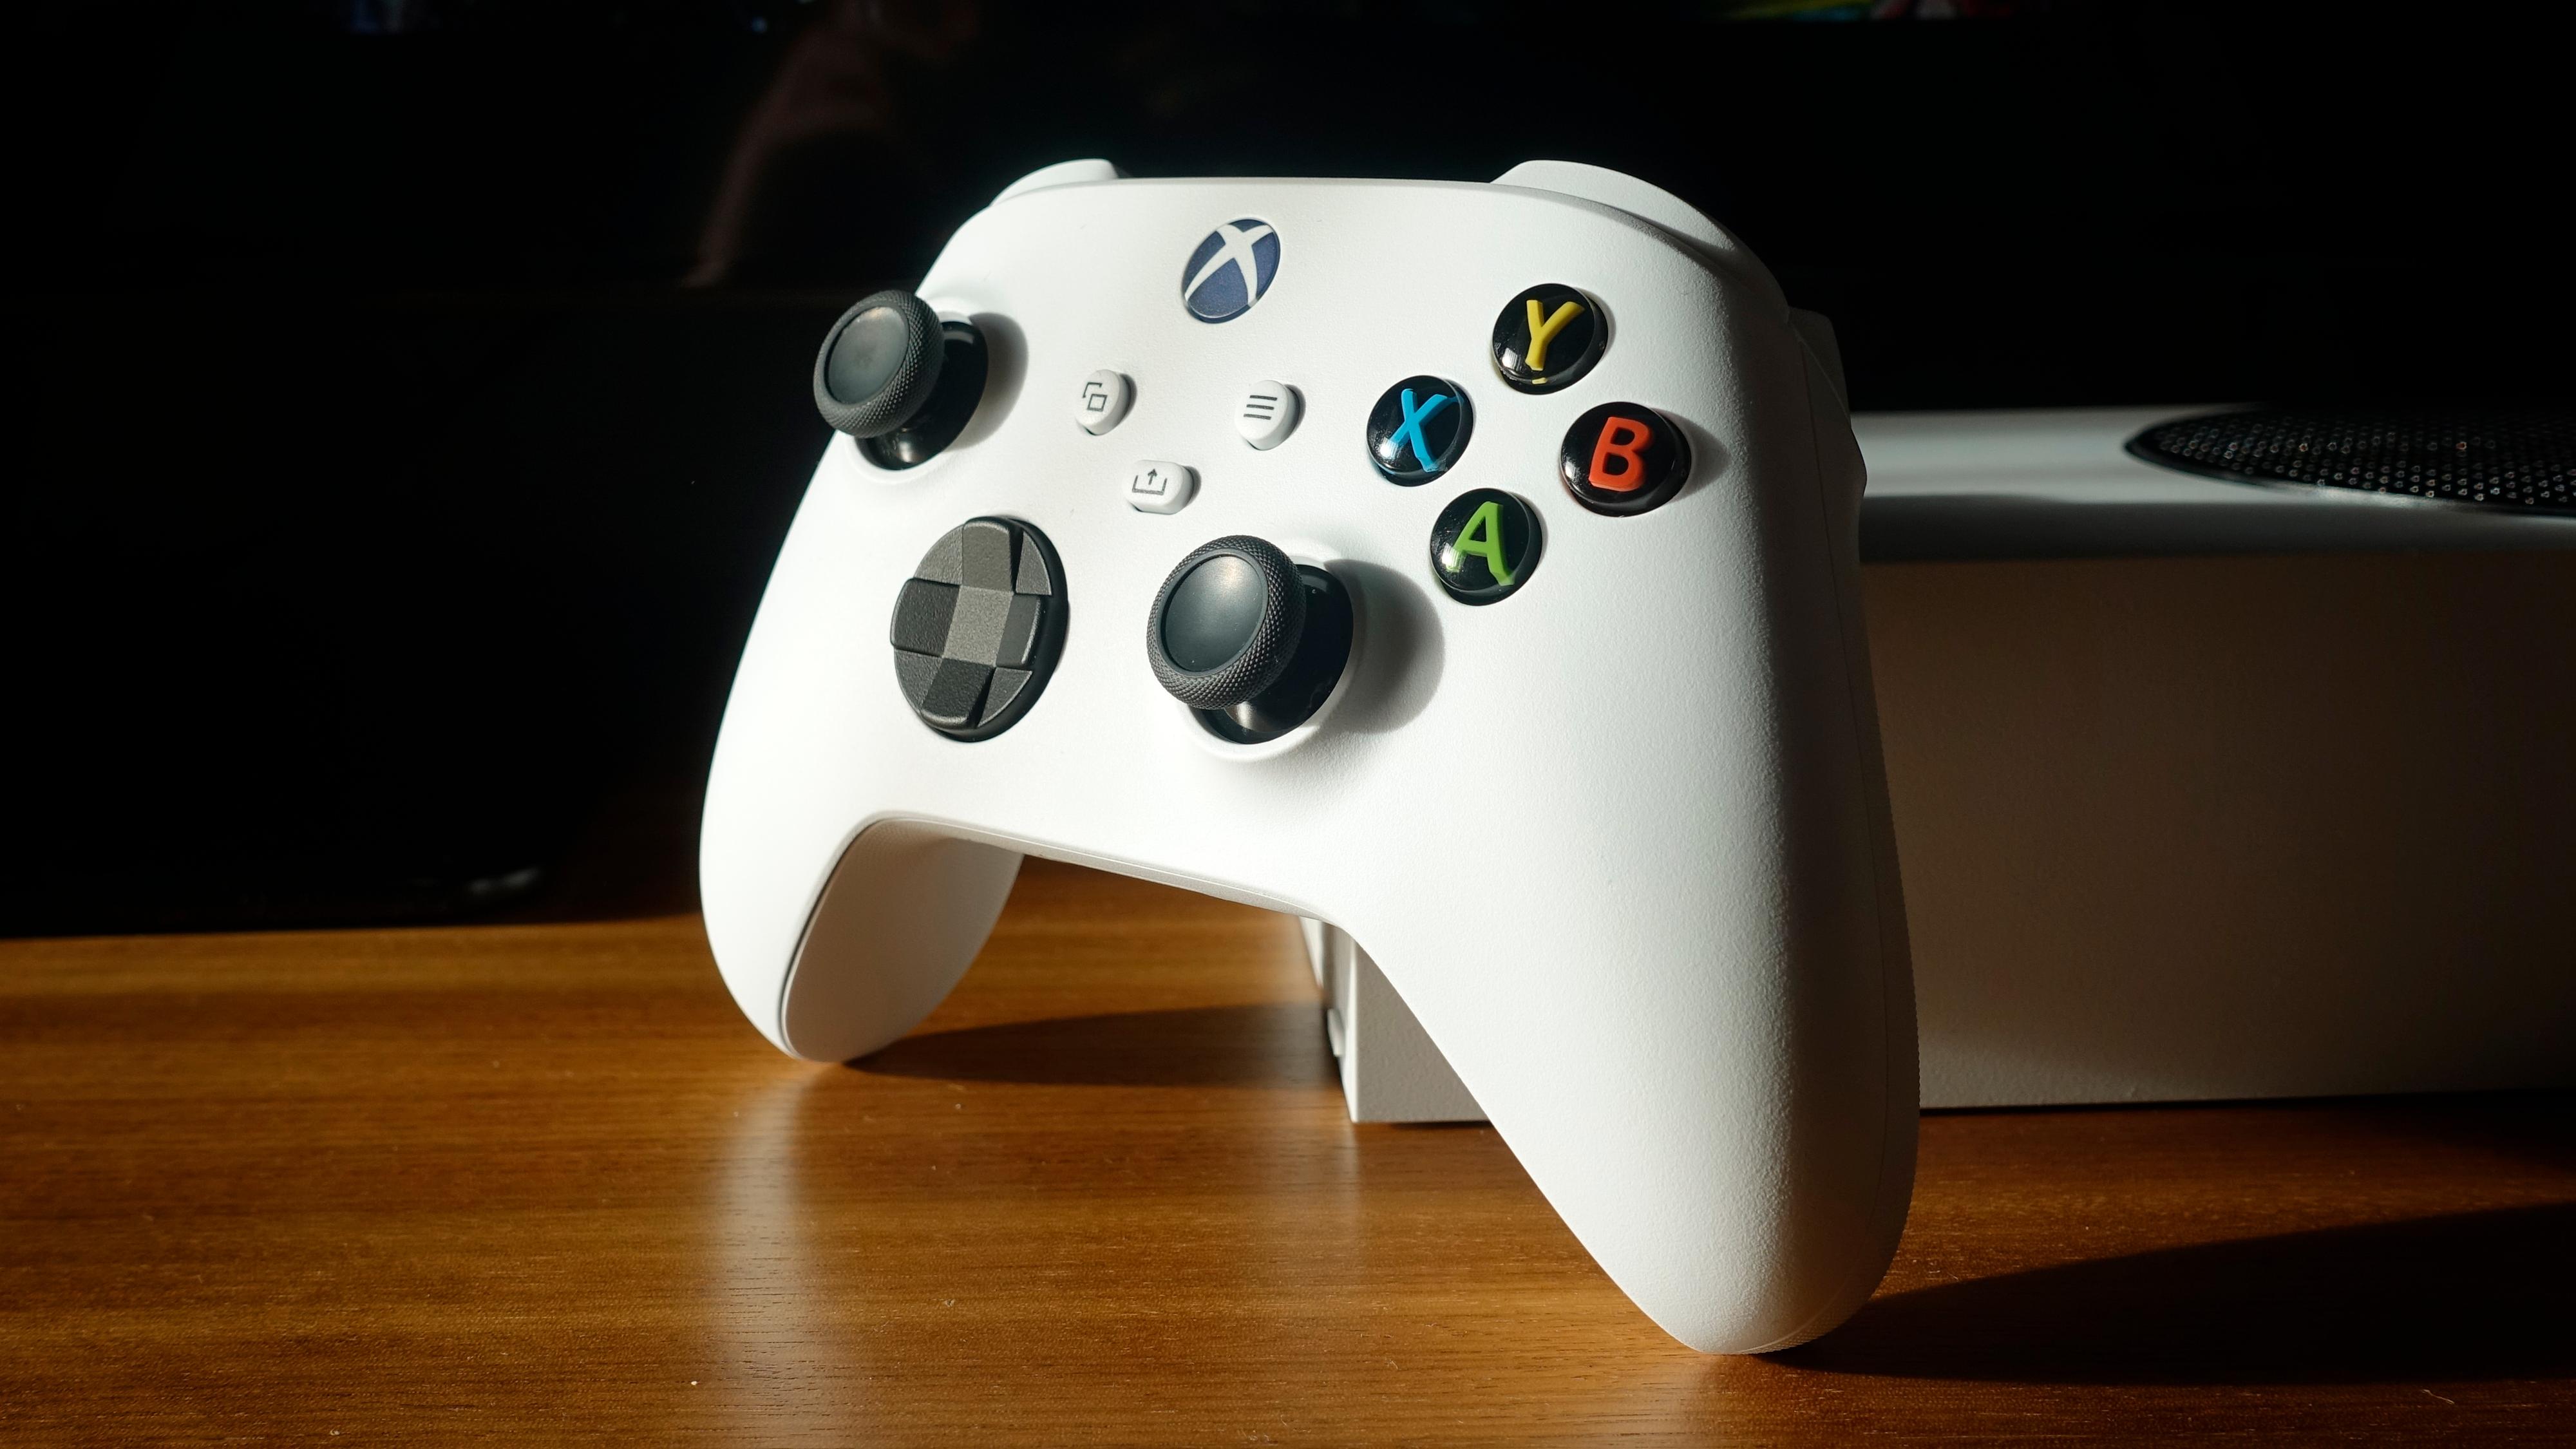 Har du brukt en Xbox-kontroller tidligere, føles den nye umiddelbart kjent ut i hånden. Den er utmerket. 